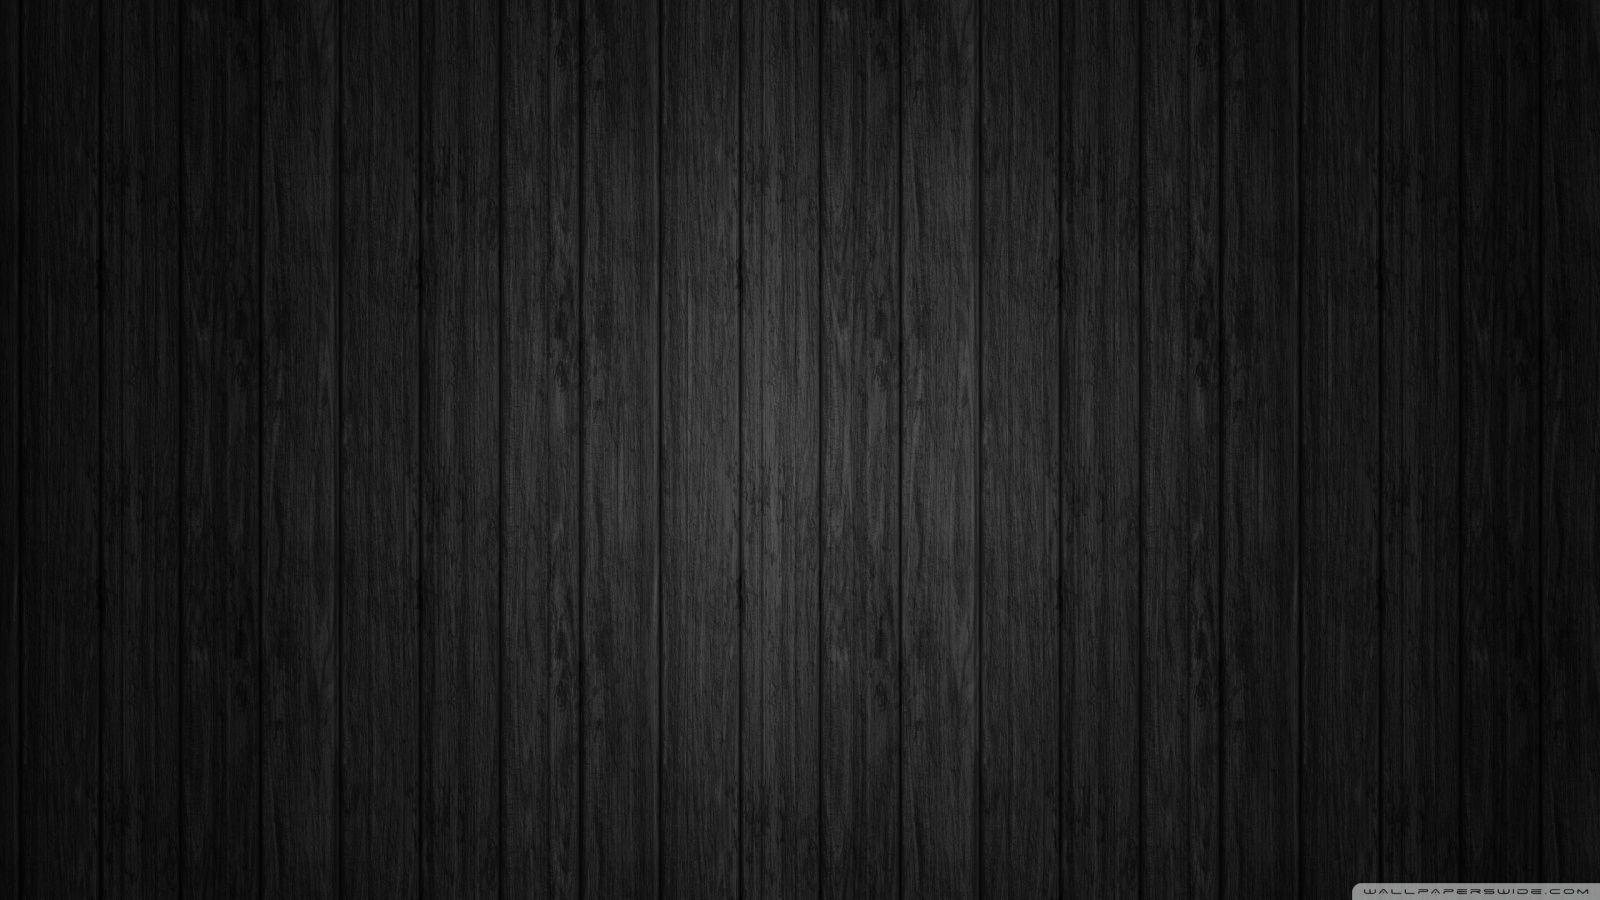 Black Background Wood HD desktop wallpaper, Widescreen, High